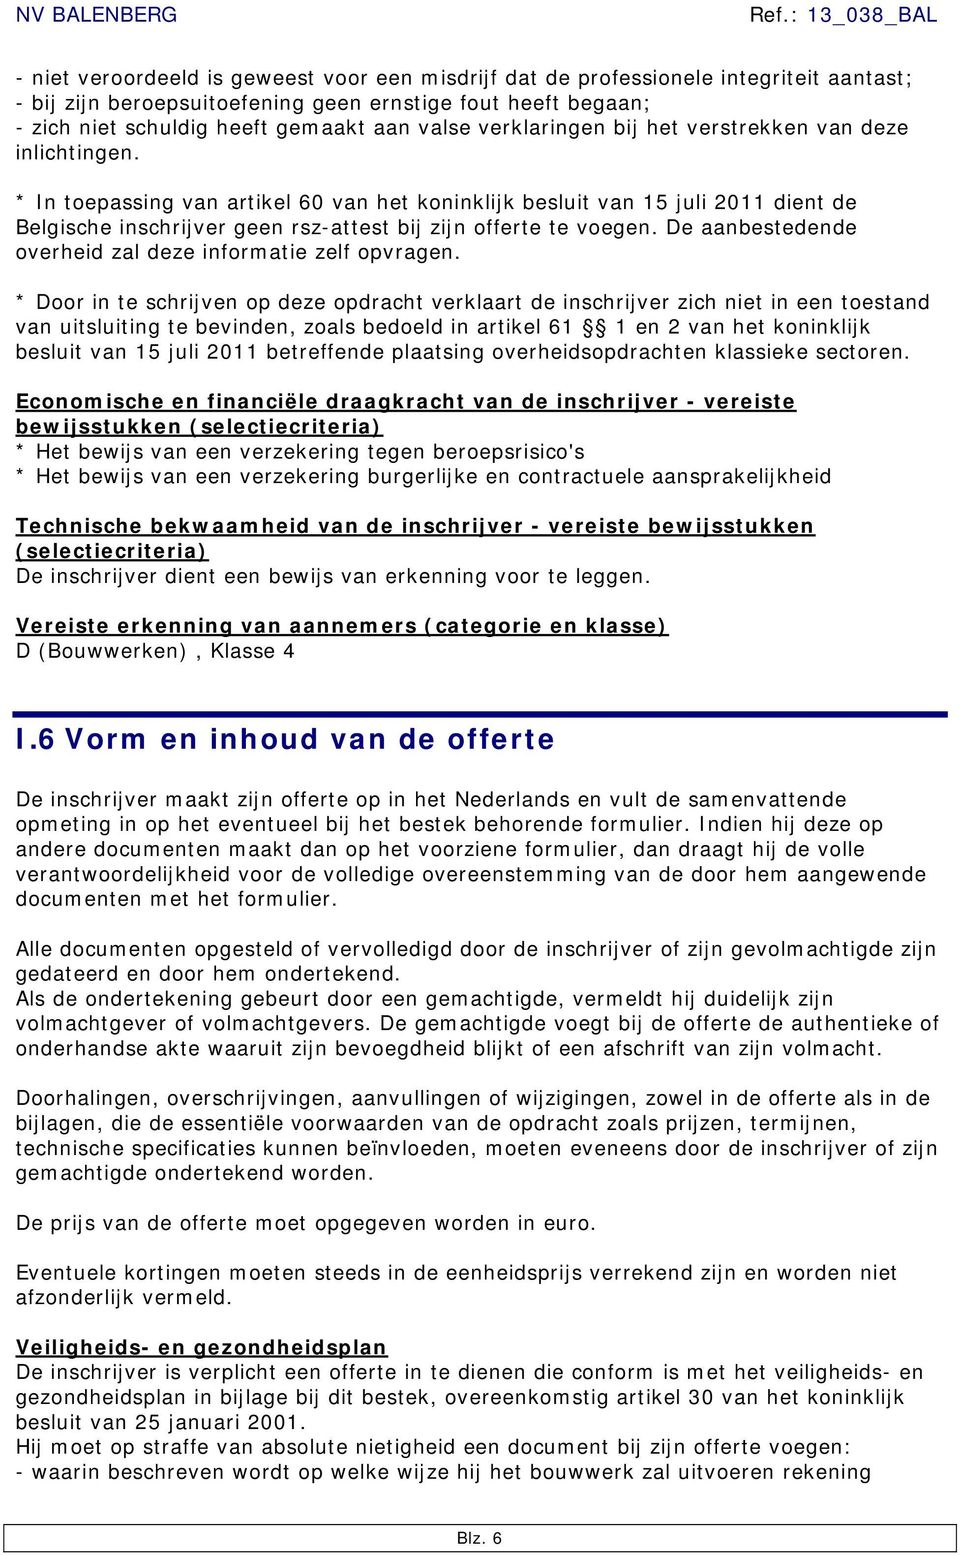 * In toepassing van artikel 60 van het koninklijk besluit van 15 juli 2011 dient de Belgische inschrijver geen rsz-attest bij zijn offerte te voegen.